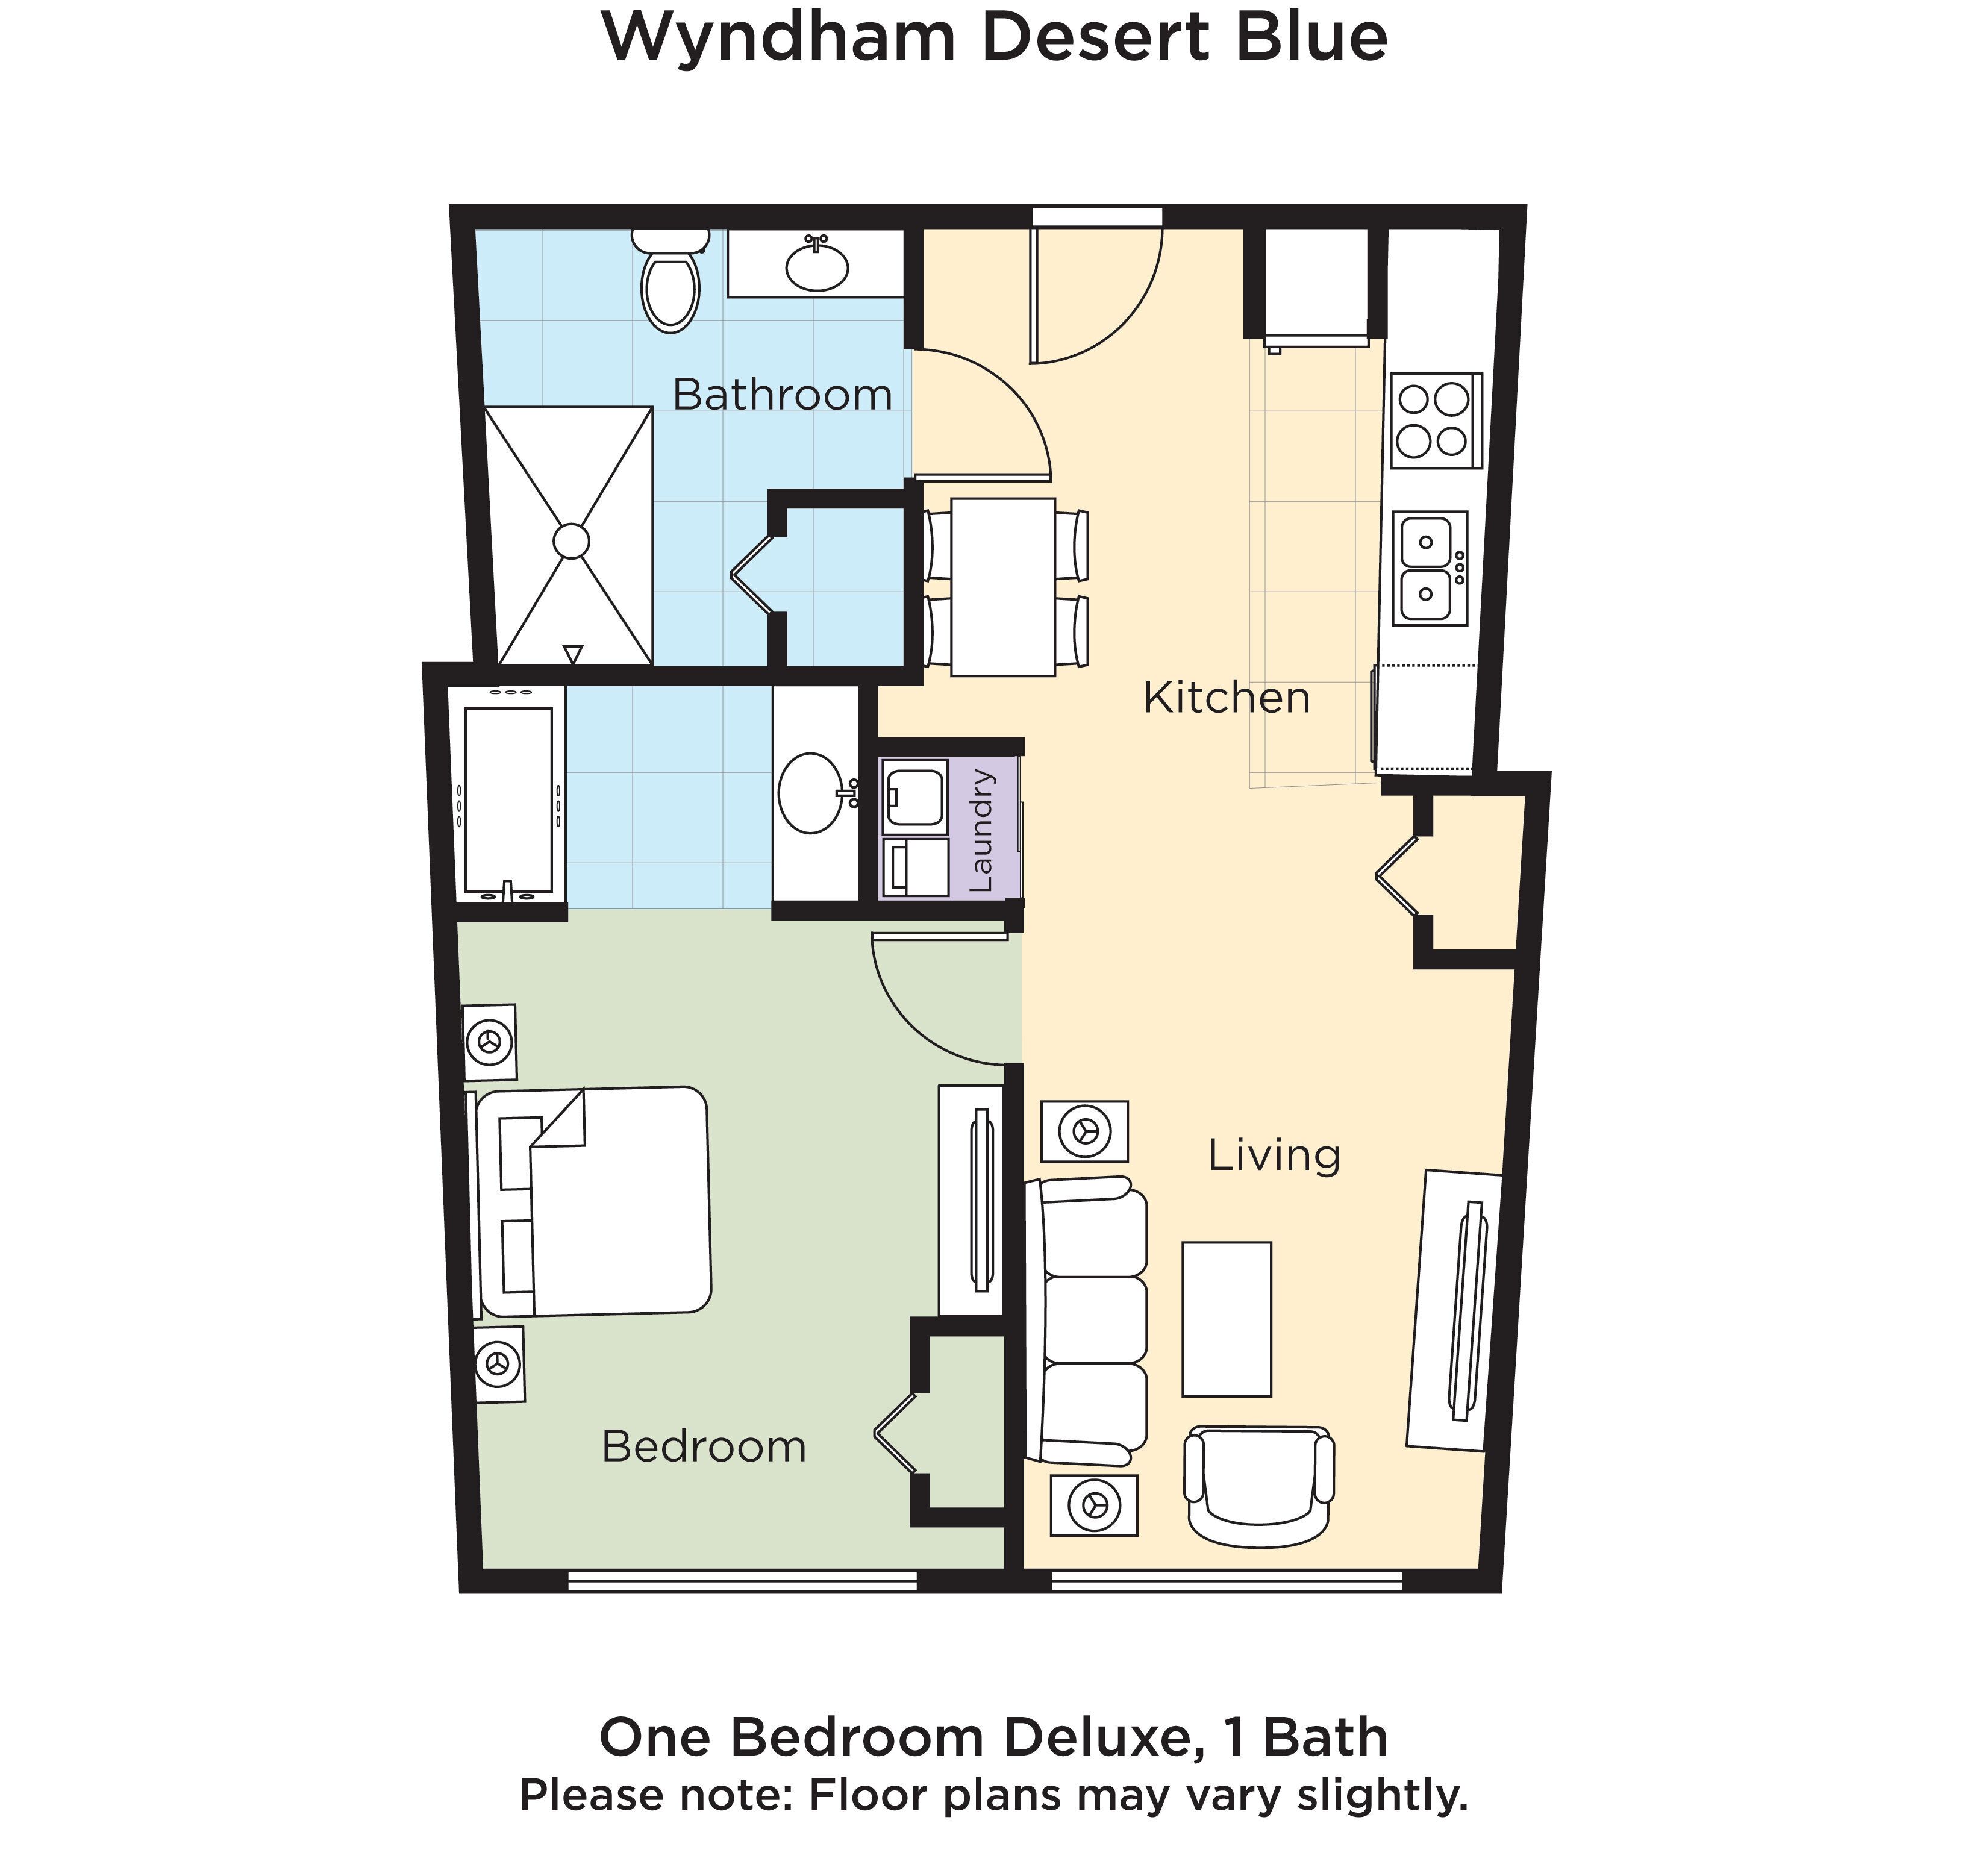 Club Wyndham Desert Blue